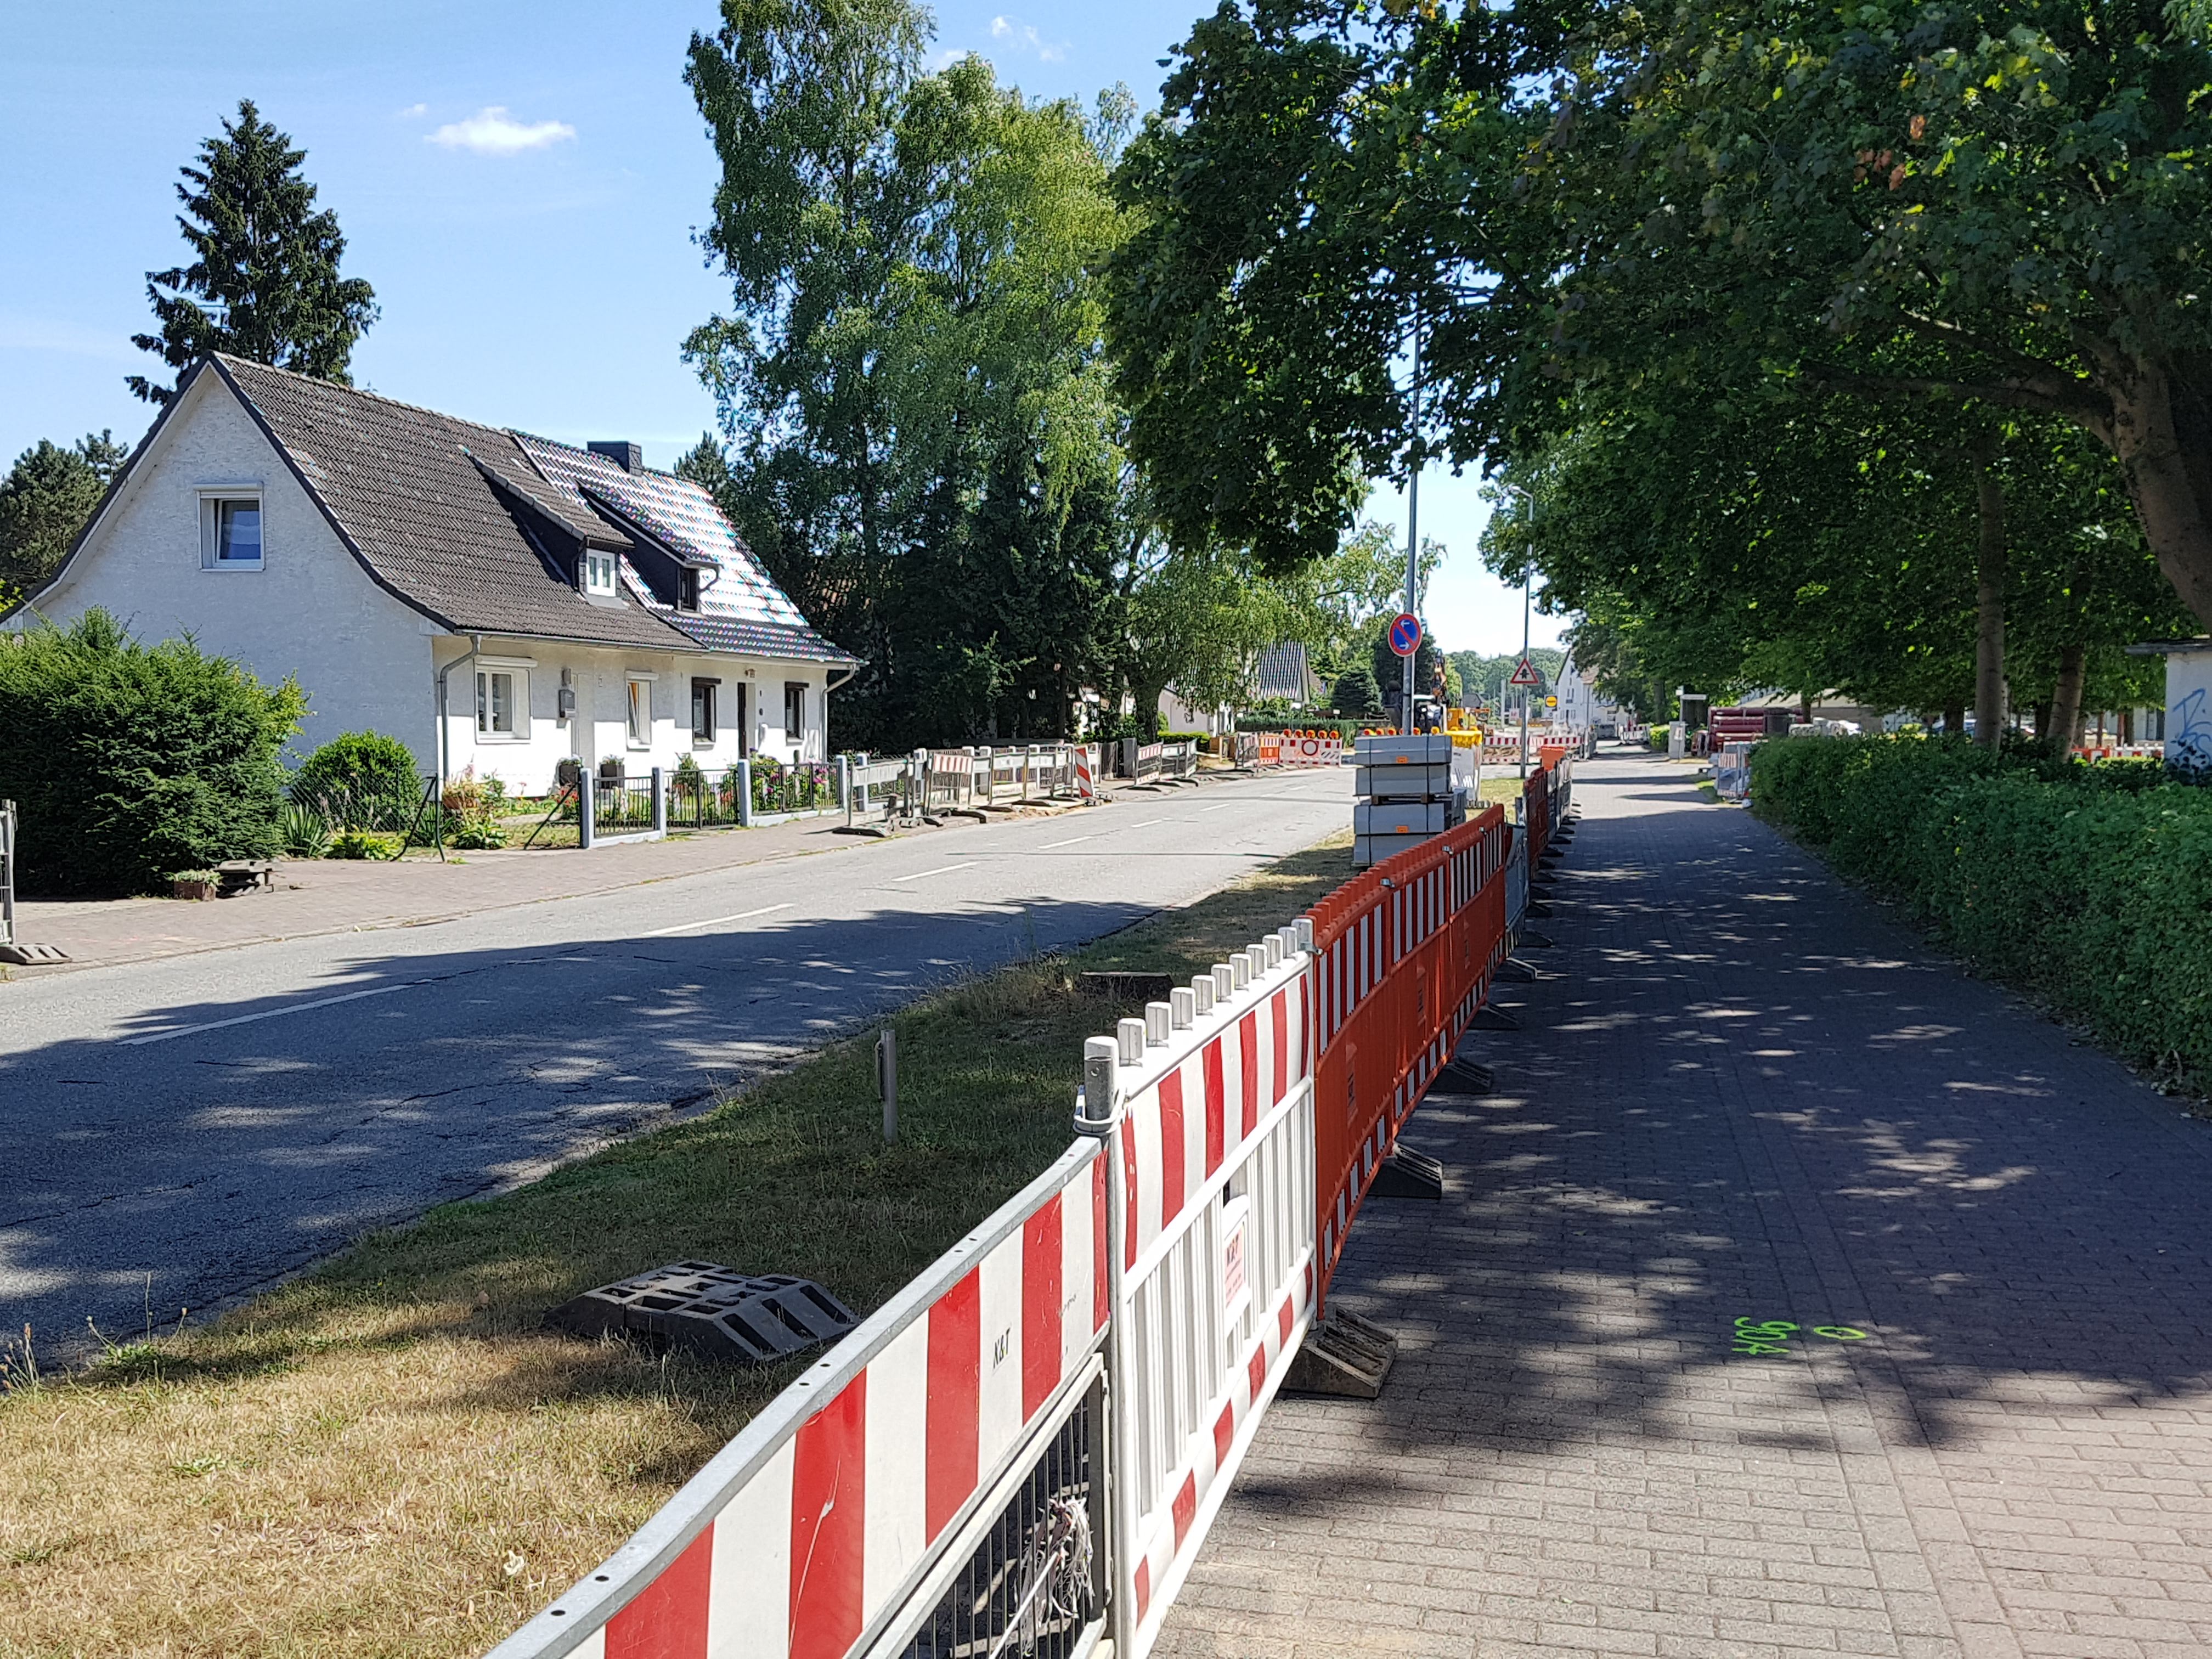 2018-07-07 Wahlstedt, Kronsheider Strasse (4)